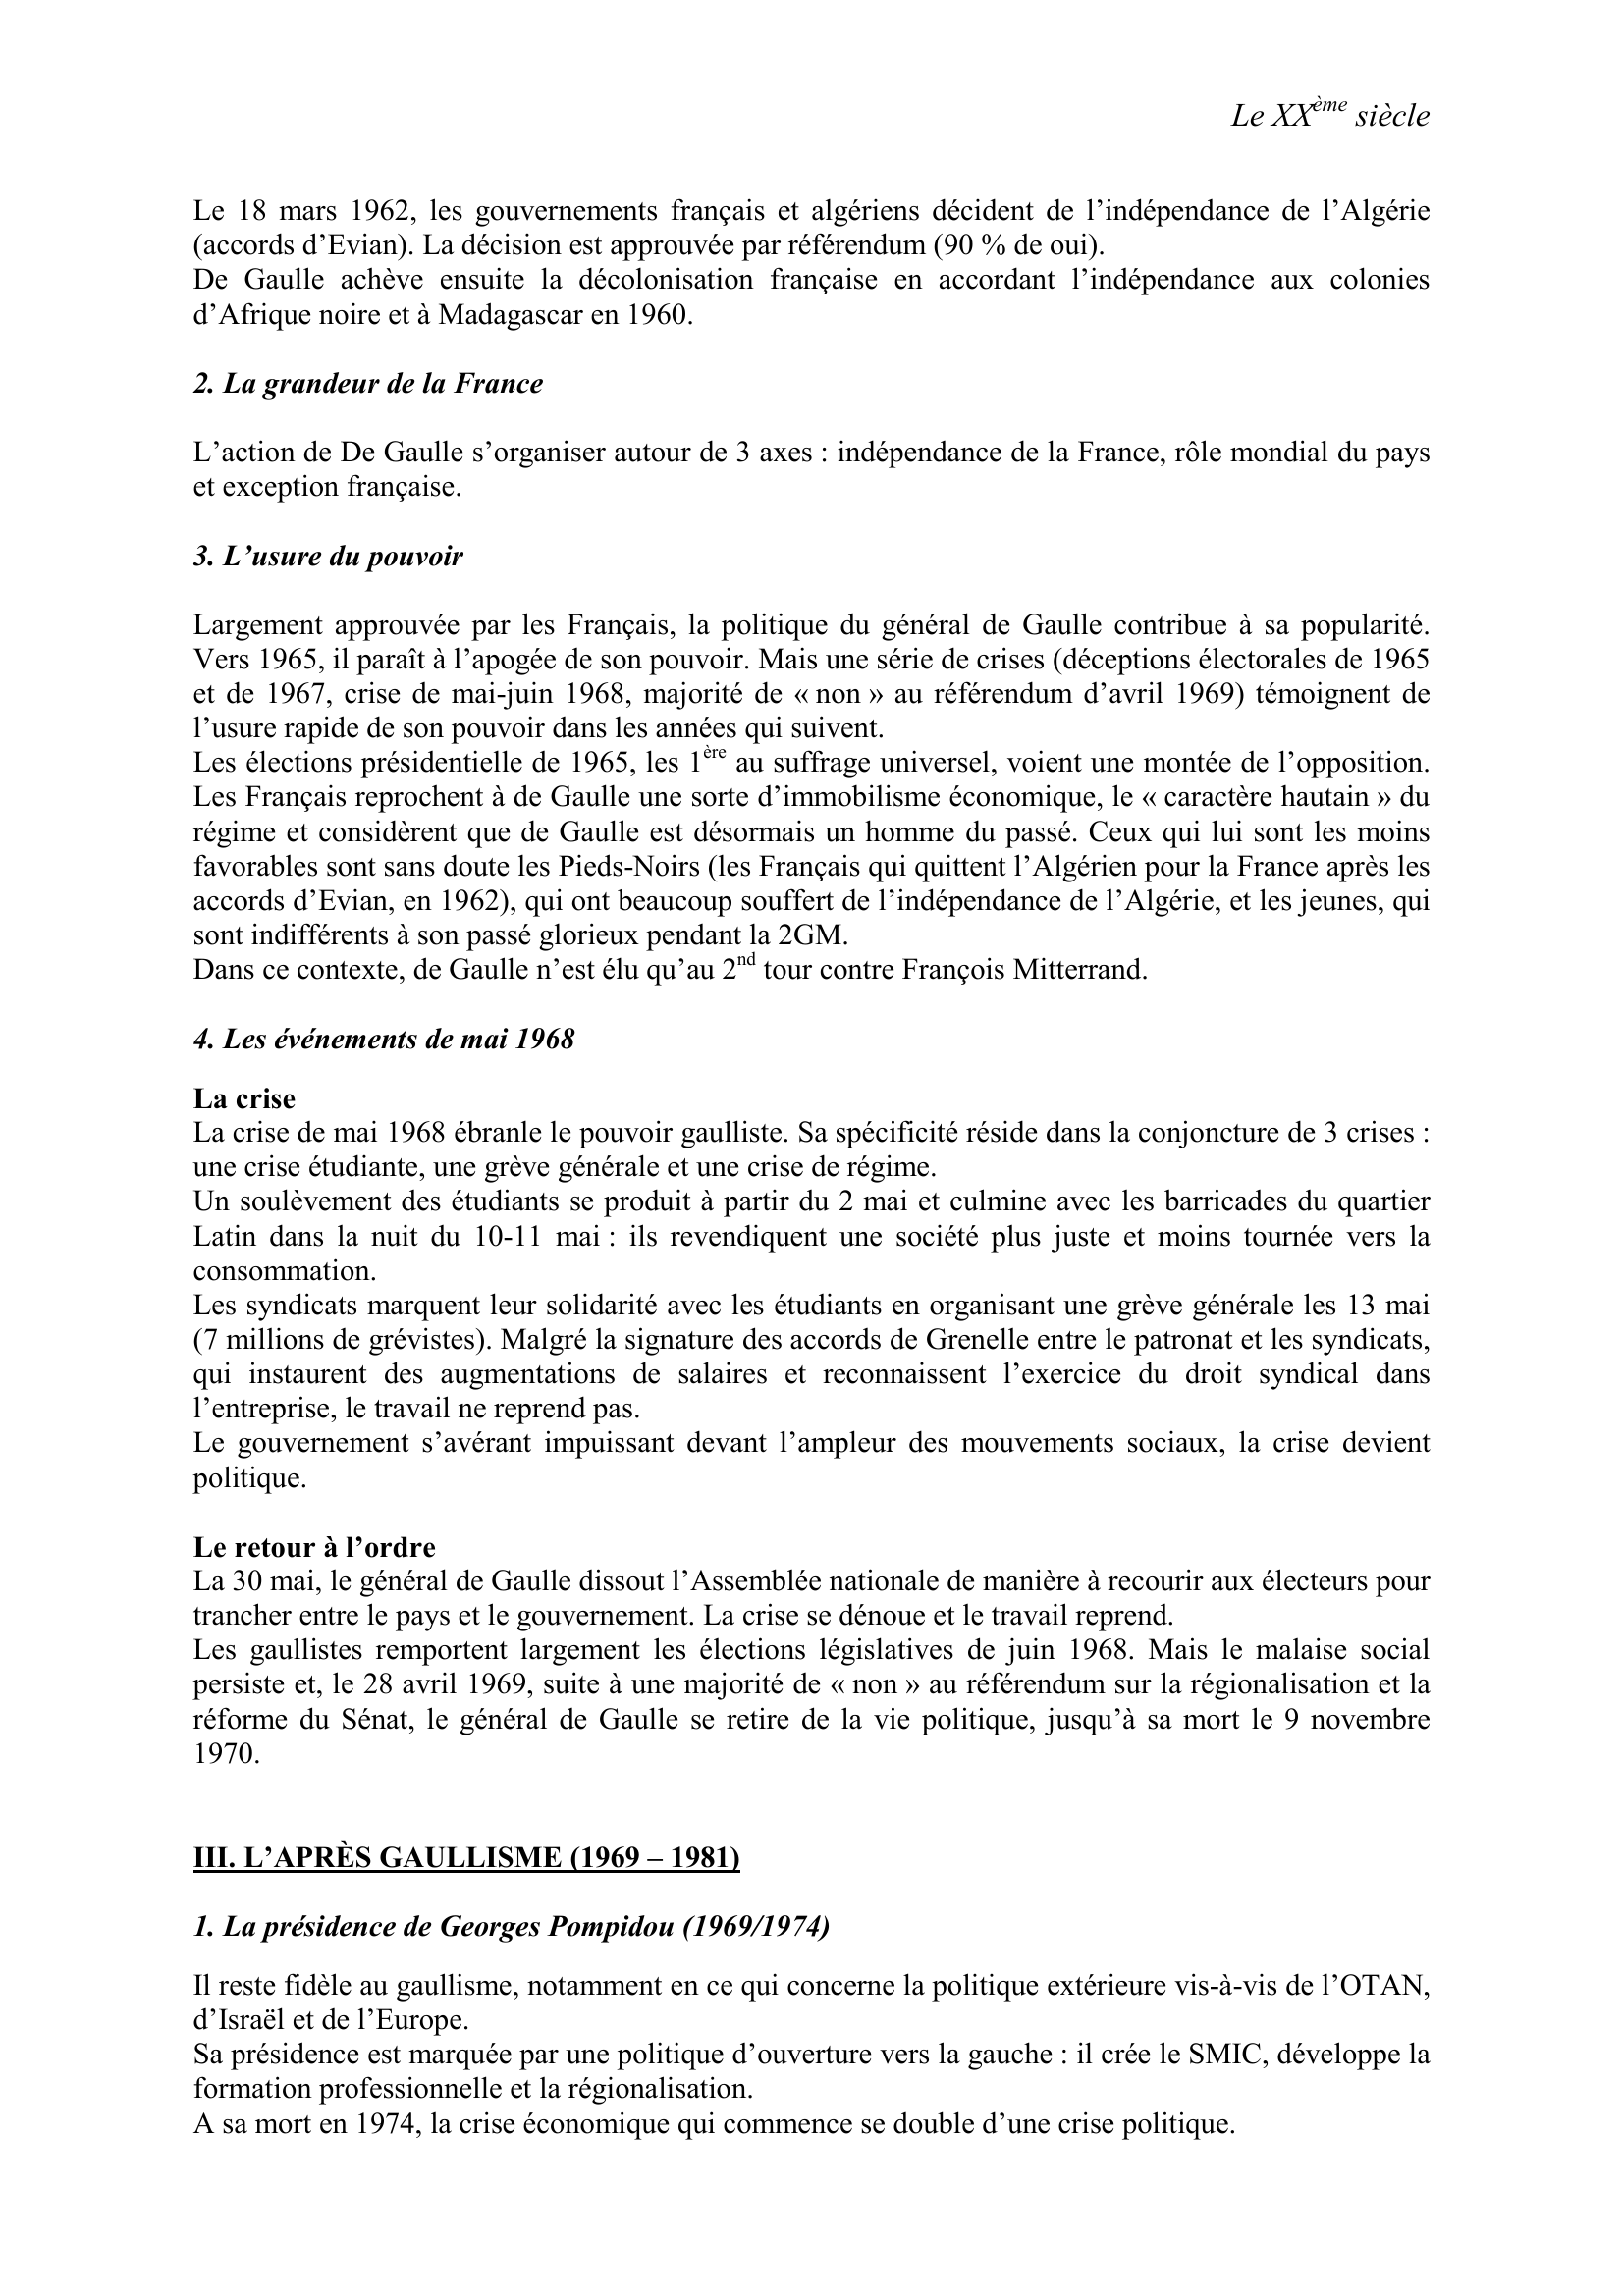 Prévisualisation du document Le XXème siècle

LA Vème RÉPUBLIQUE

I.